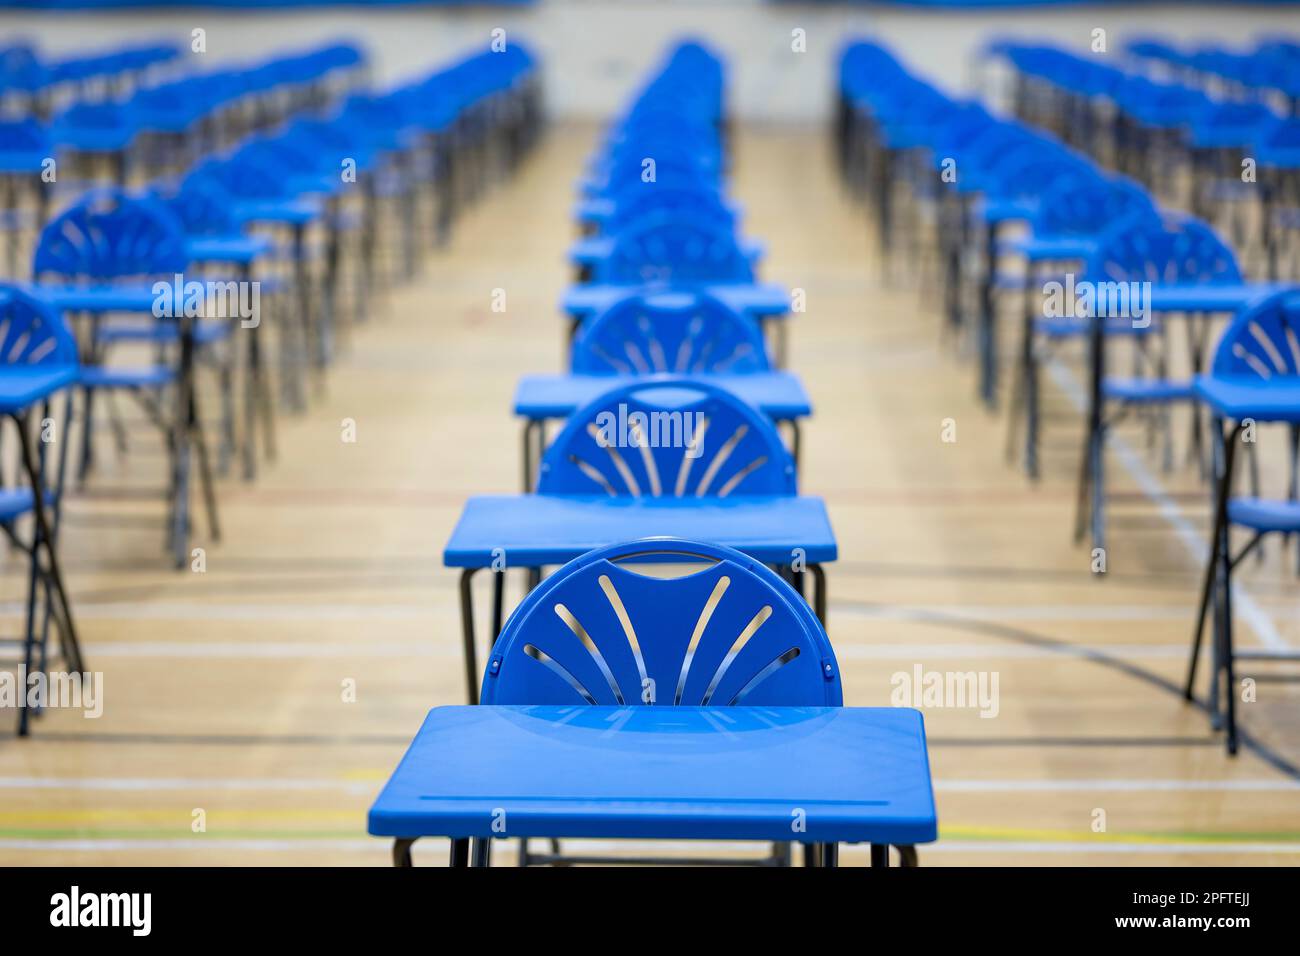 Banchi esame disposti in una sala scuola. Foto Stock